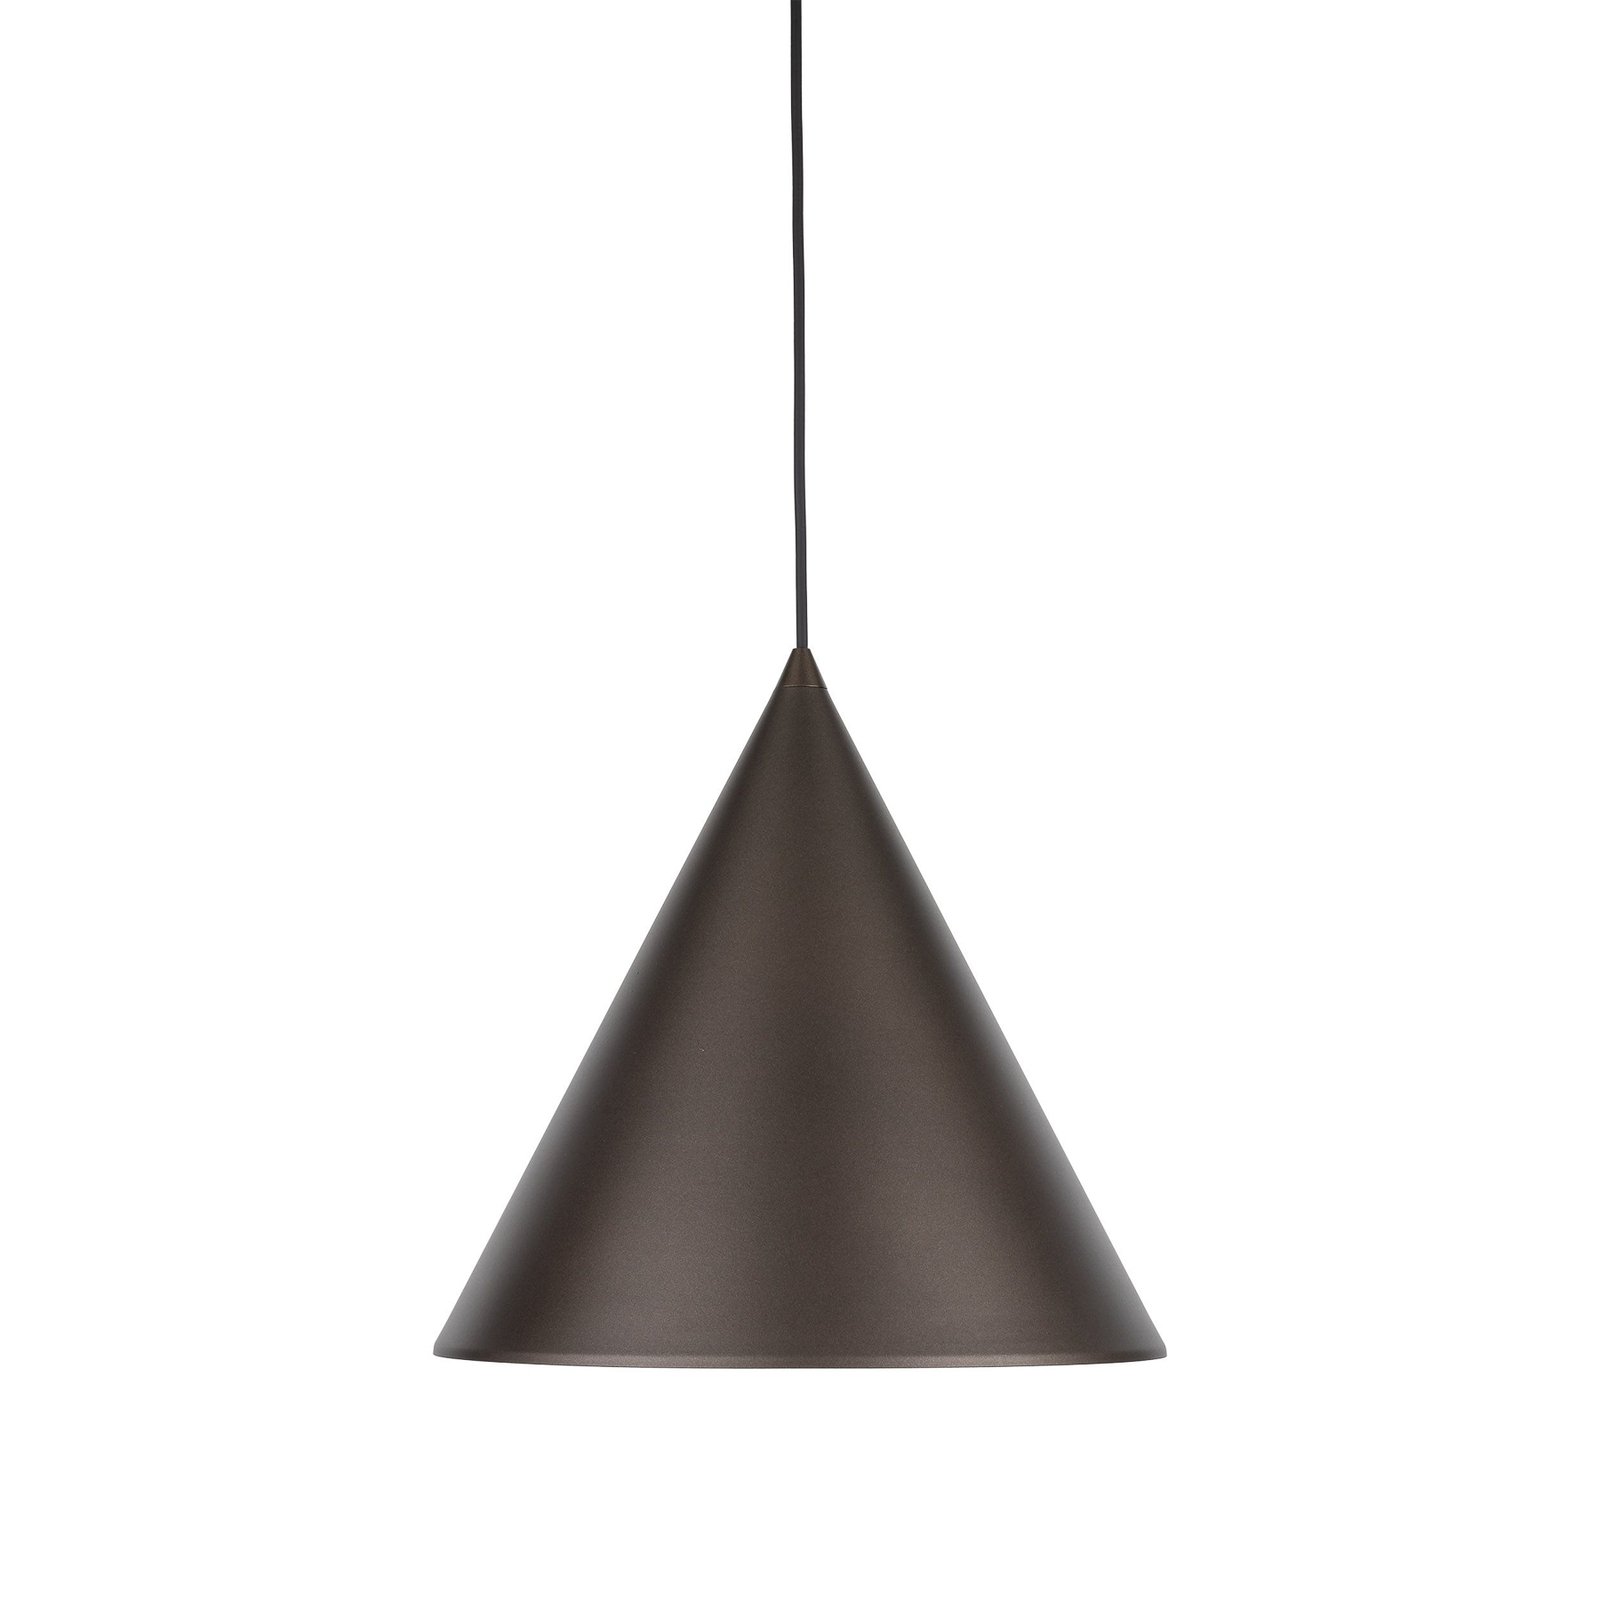 Lampa wisząca Cono, 1-punktowa, Ø 32 cm, kolor brązowy